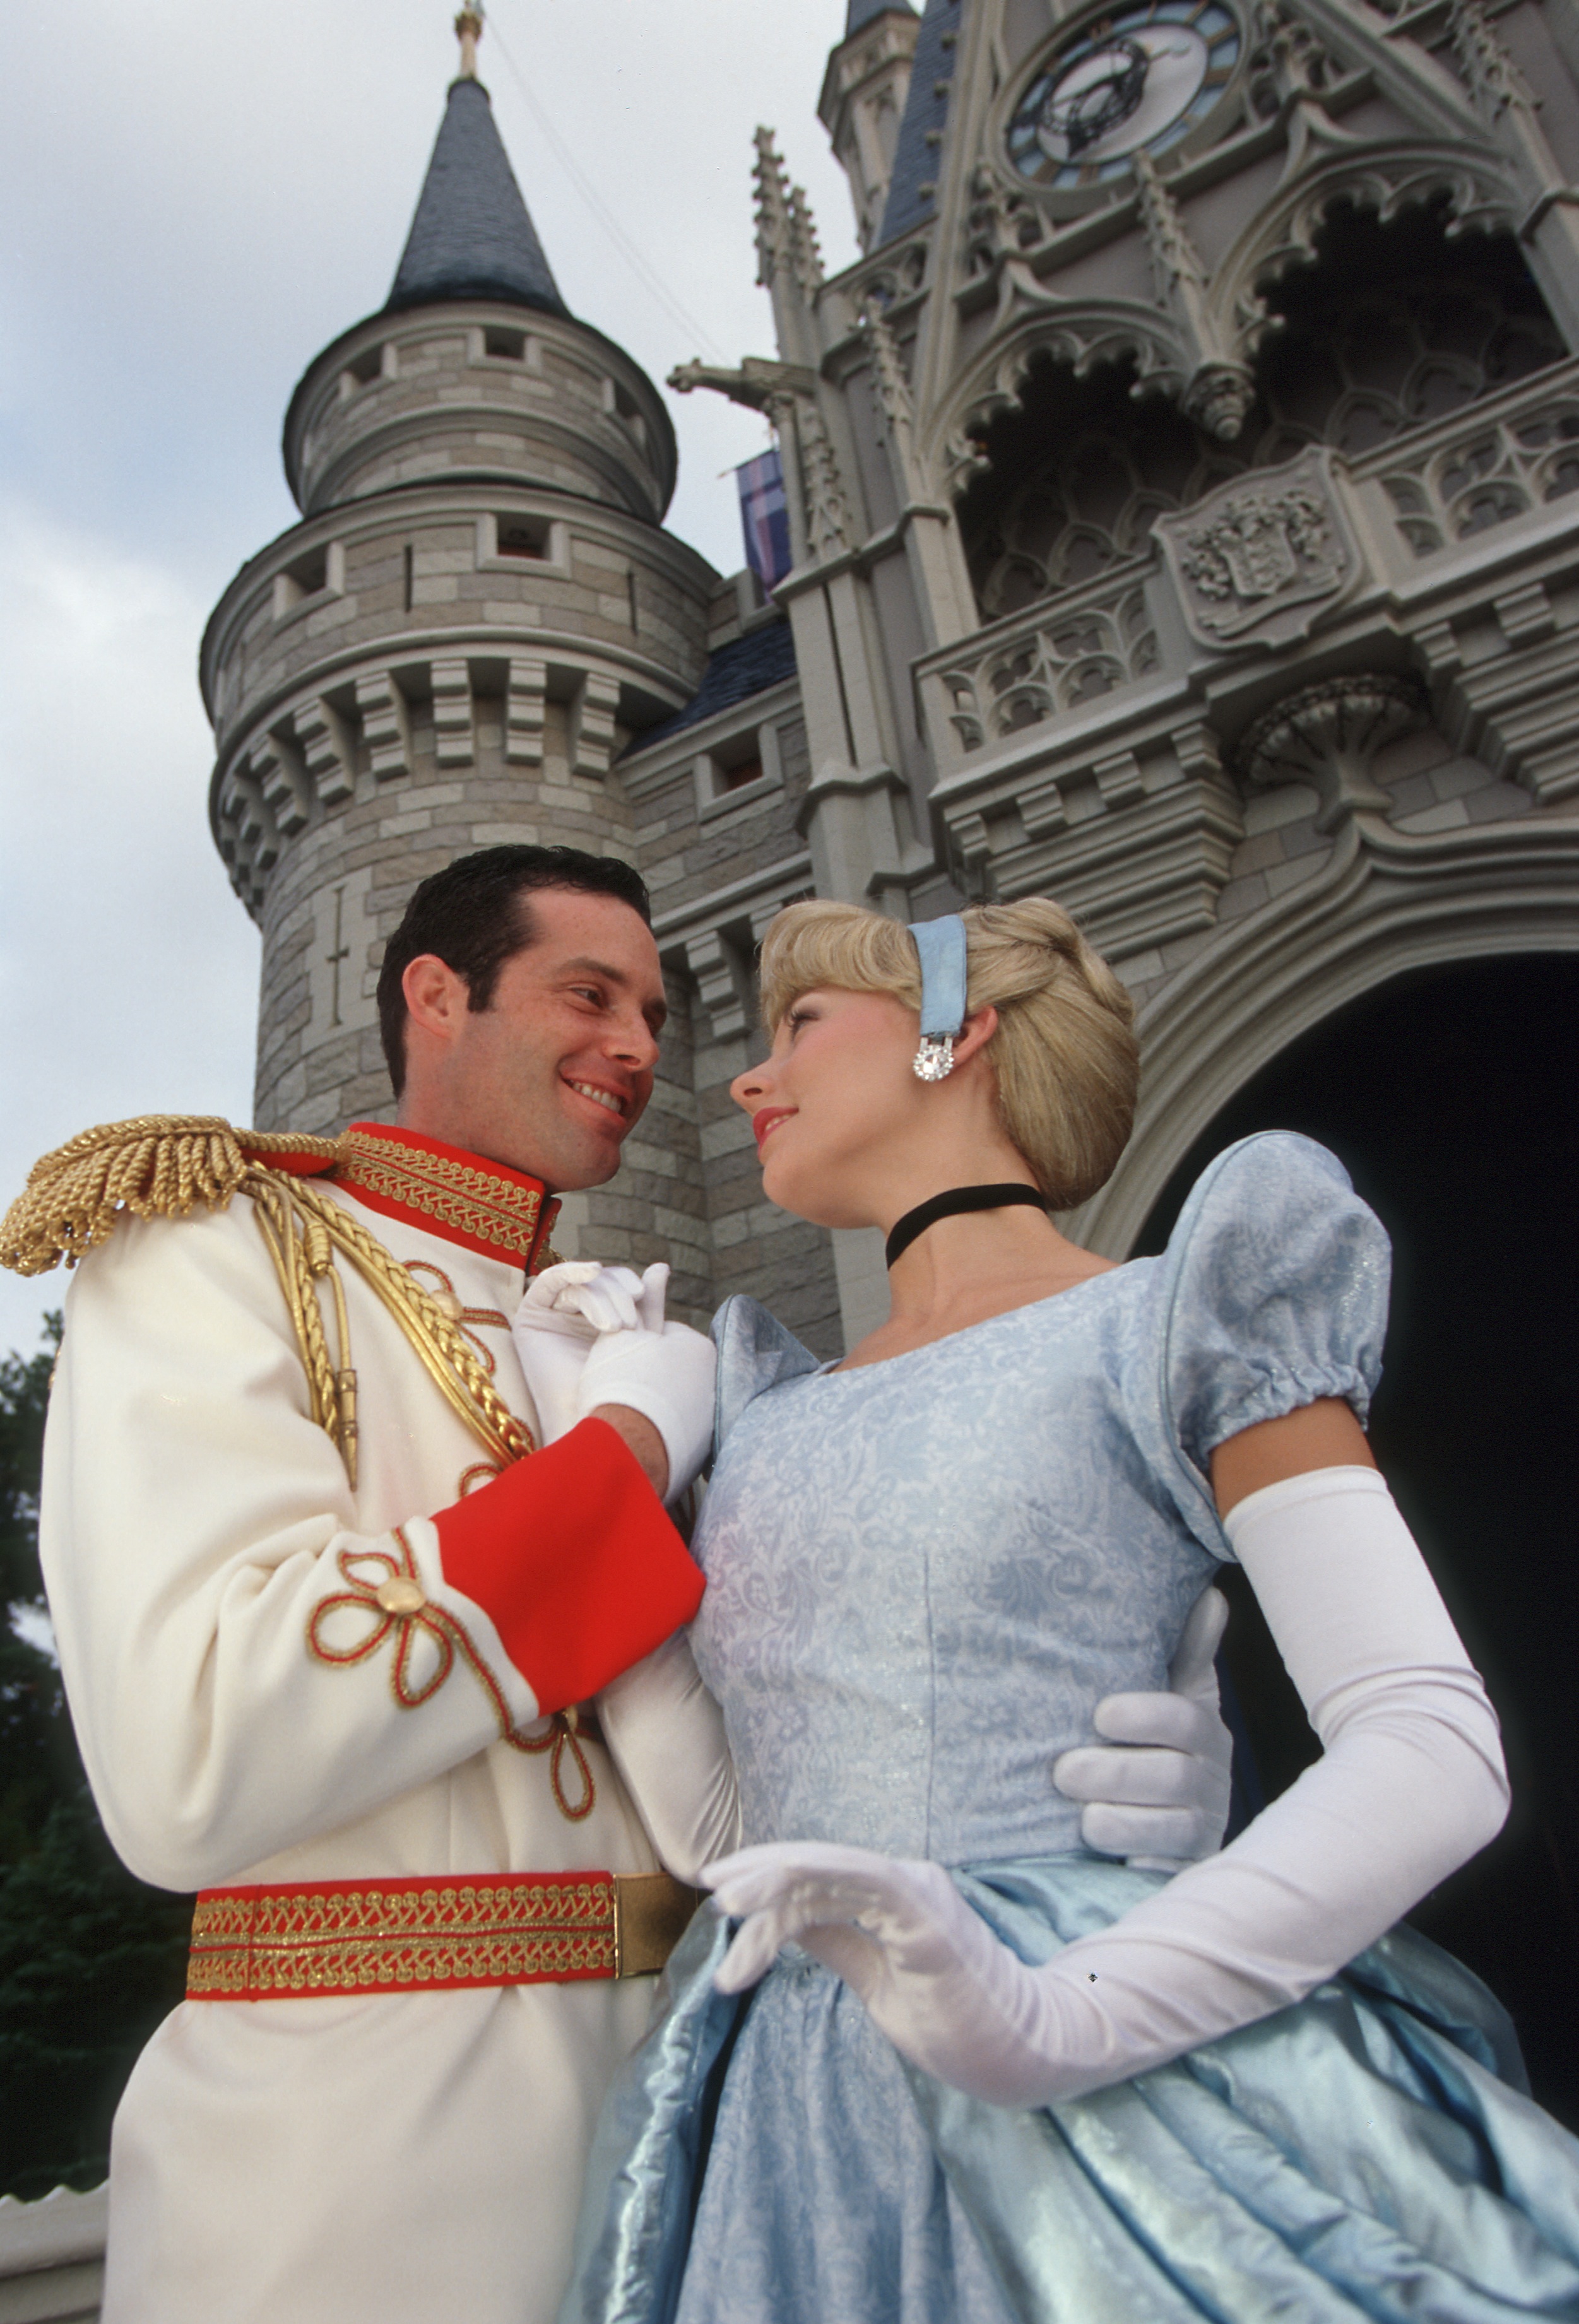 Top Ten Tuesdays: Top Ten Princess Activities at Walt Disney World